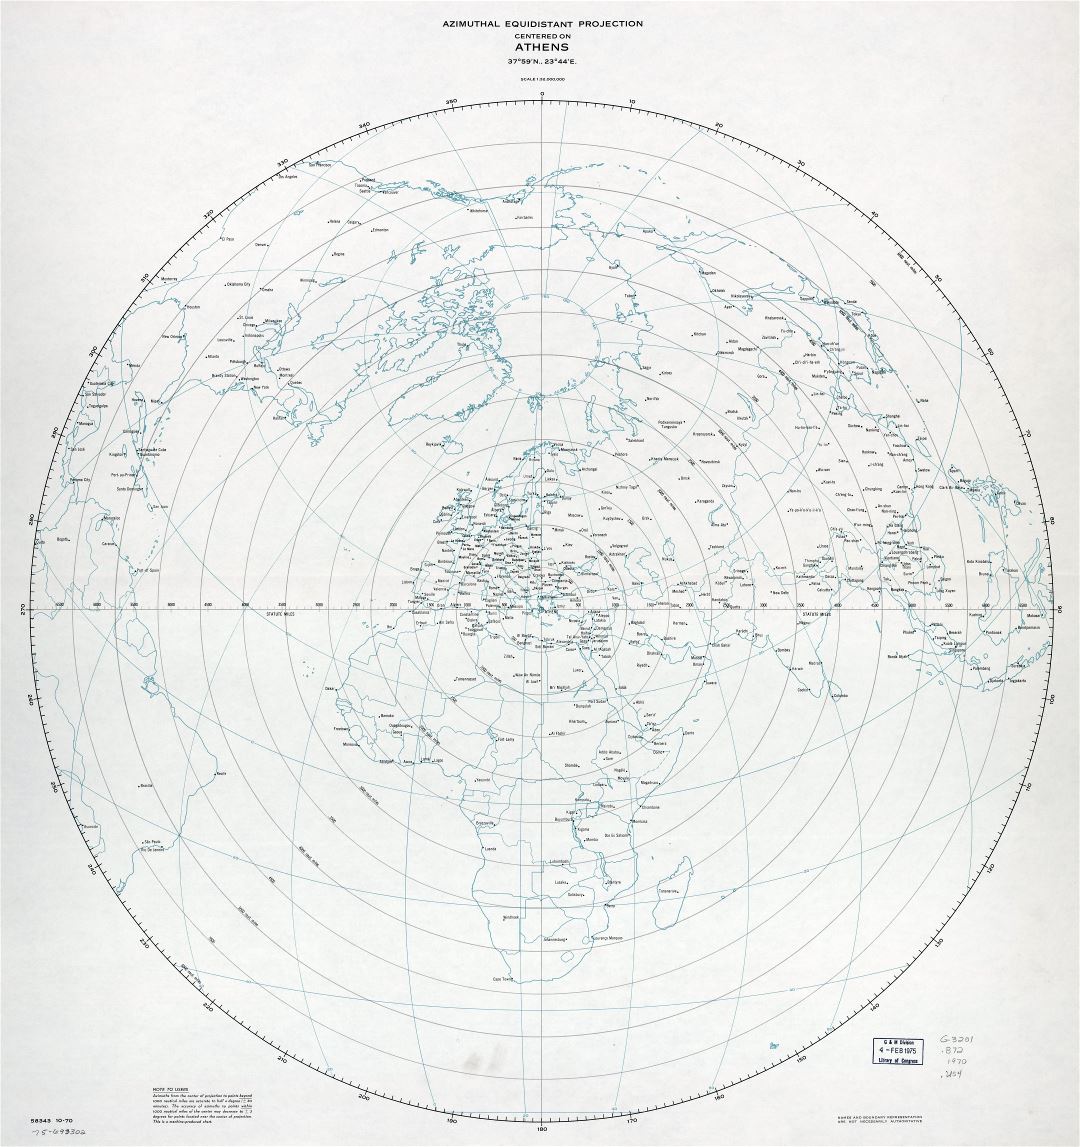 Gran escala de detalle azimutal equidistante proyección cartográfica centrada en Atenas - 1970